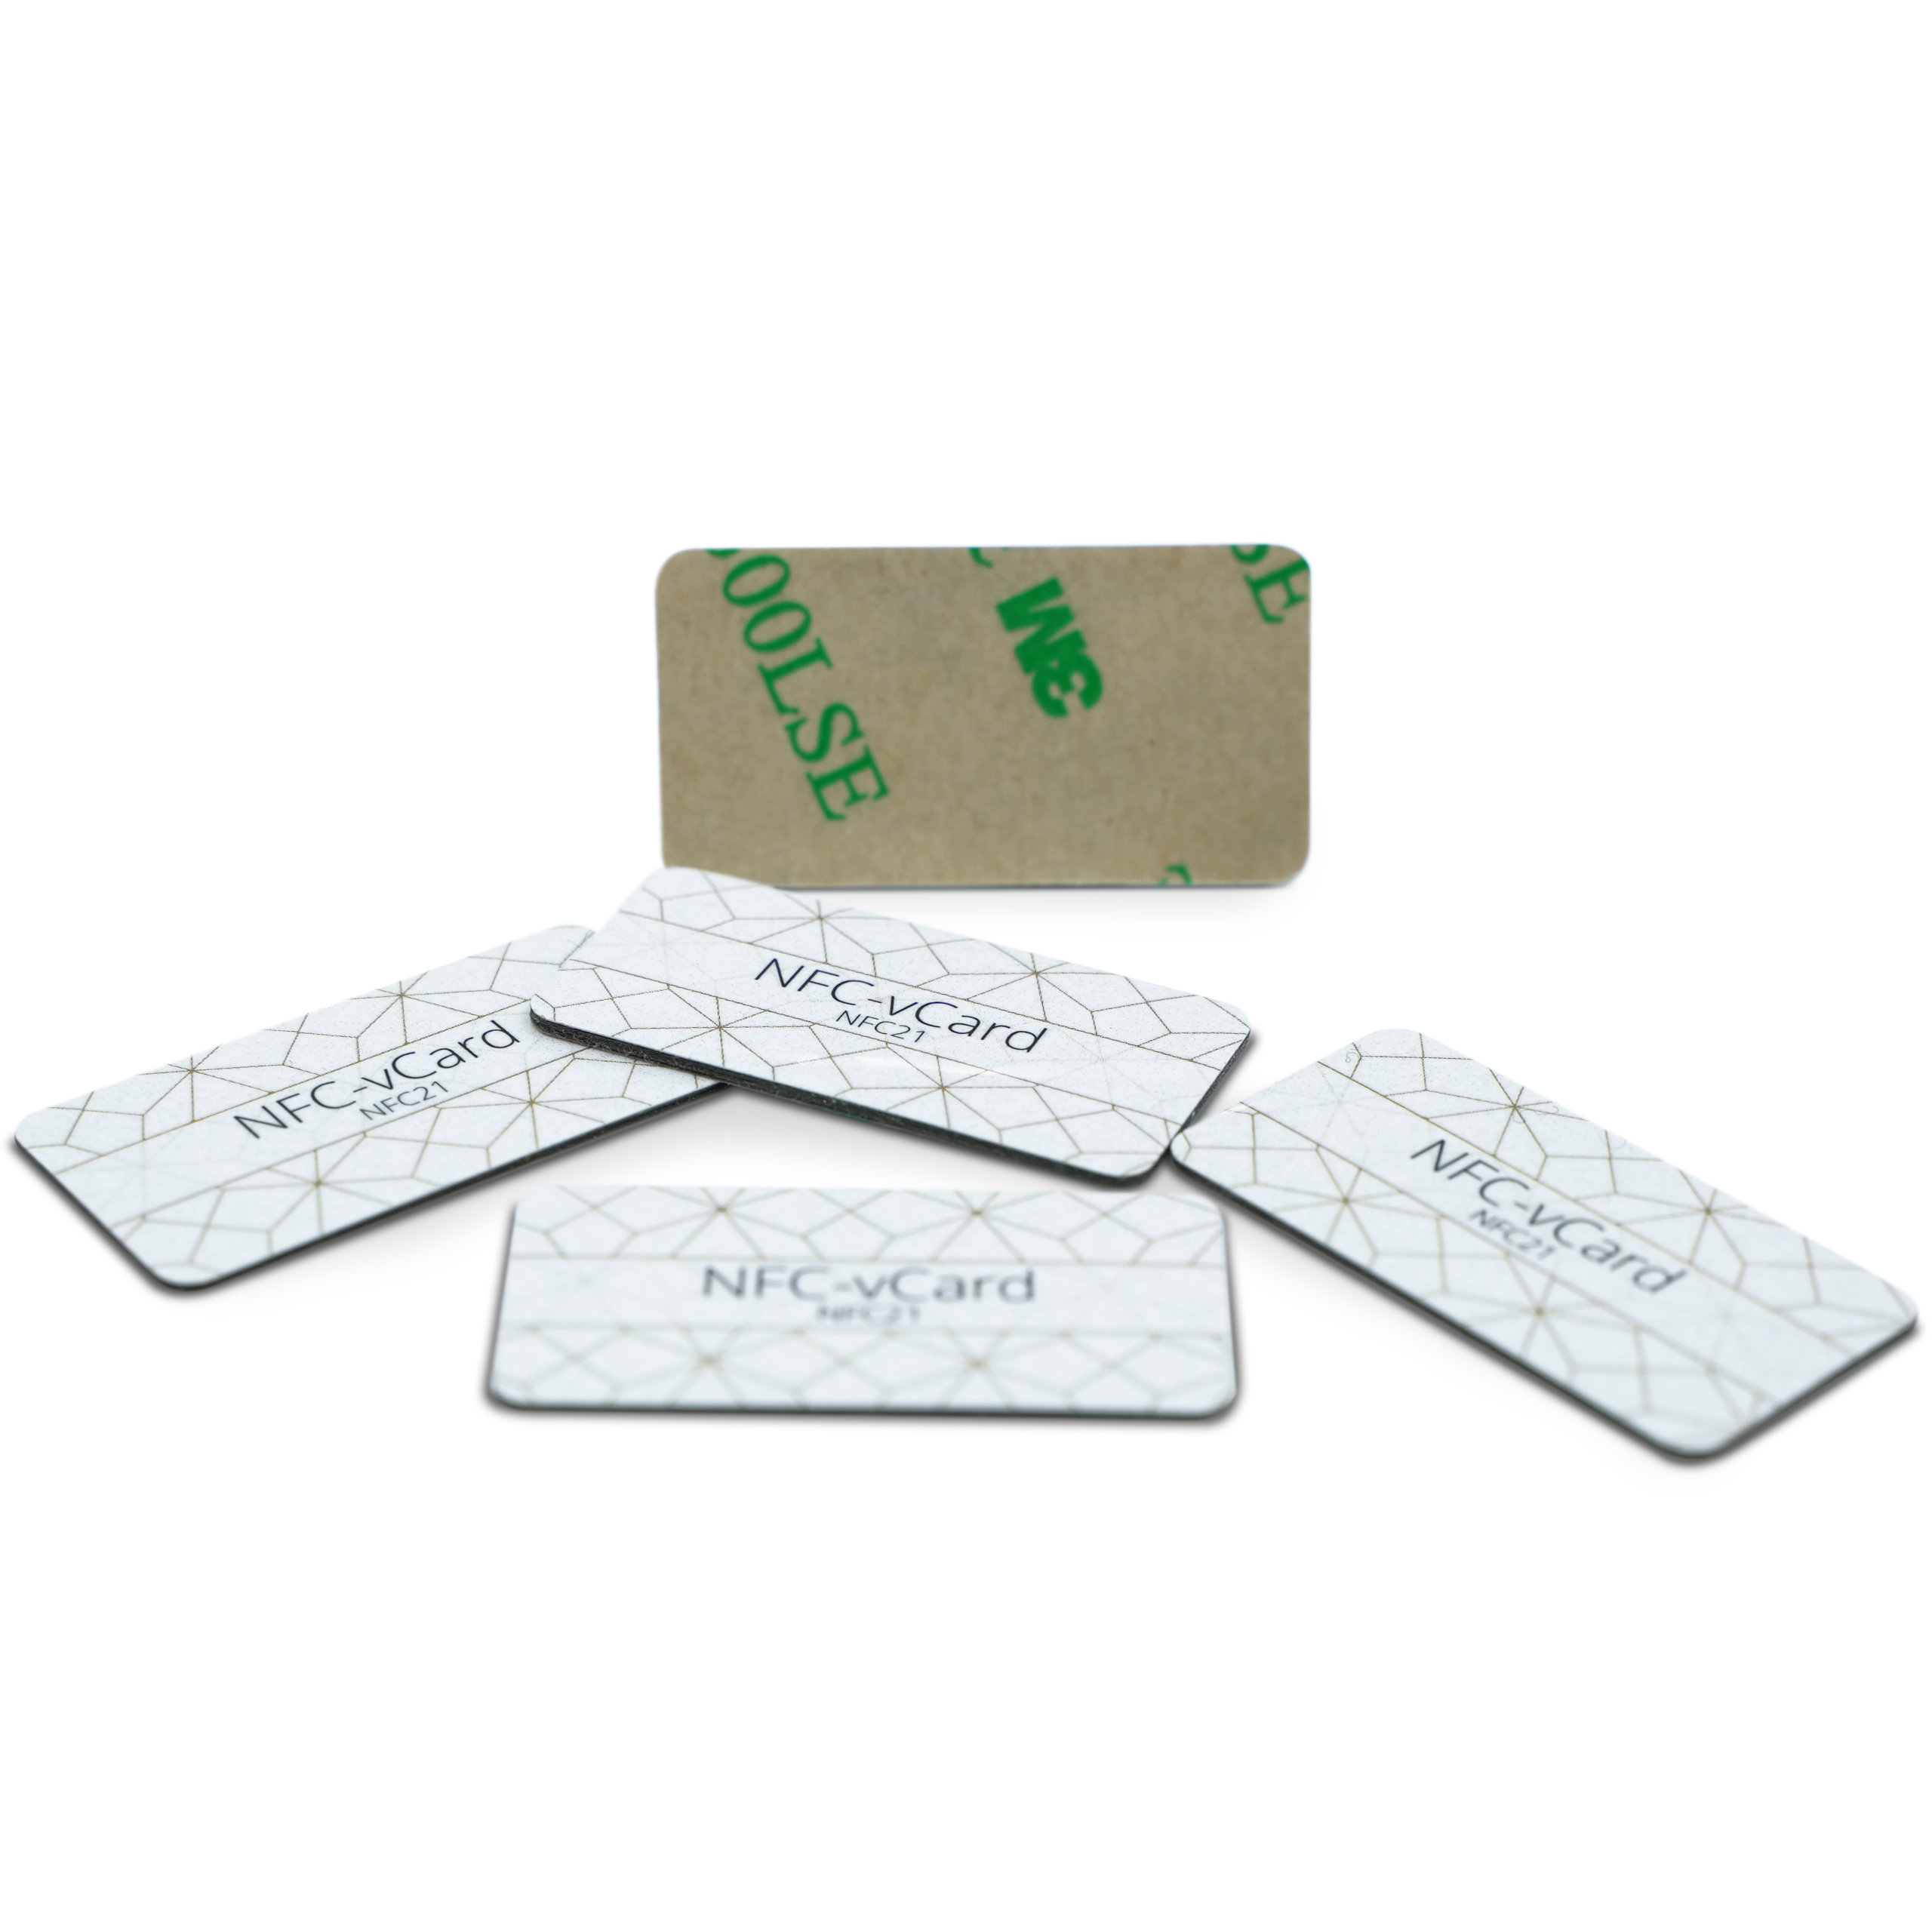 5 NFC-vCard stickers - Digital business card - incl. NFC-vCard access - PET - 35 x 18 mm - gold